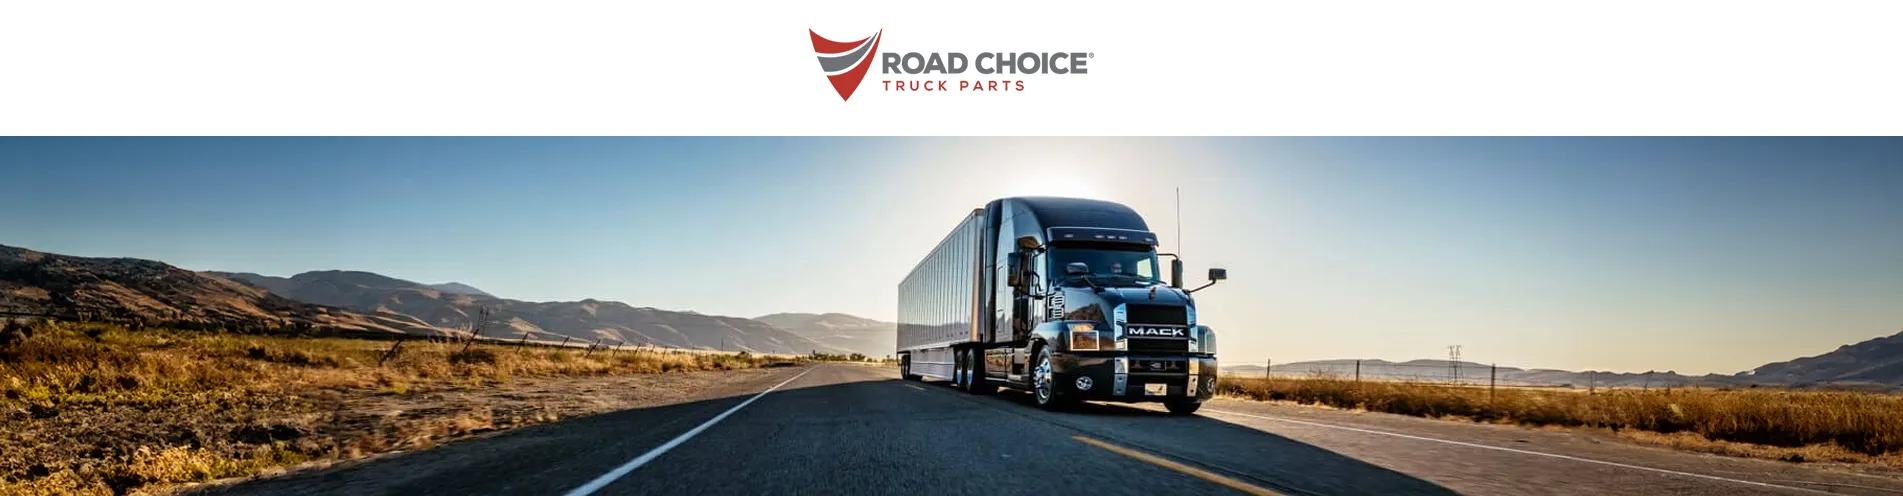 Camión de Mack Trucks recorriendo una carretera en el desierto, con el logotipo de Road Choice como símbolo de su alianza comercial.